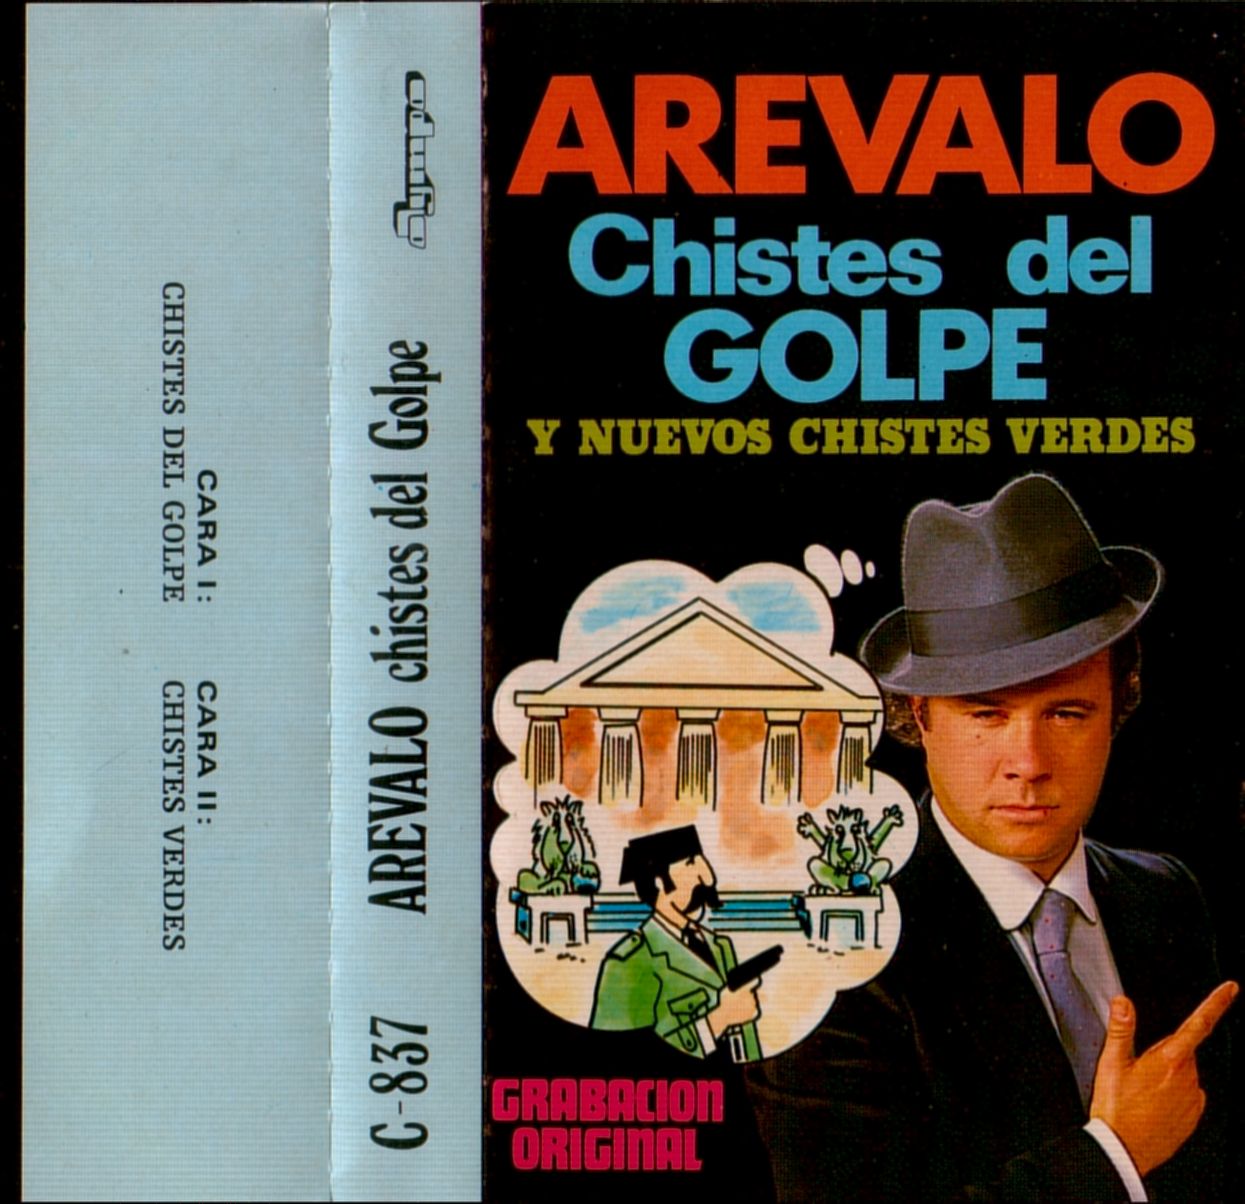 Cassettes de chistes Arevalo+-+Chistes+del+golpe+y+nuevos+chistes+verdes